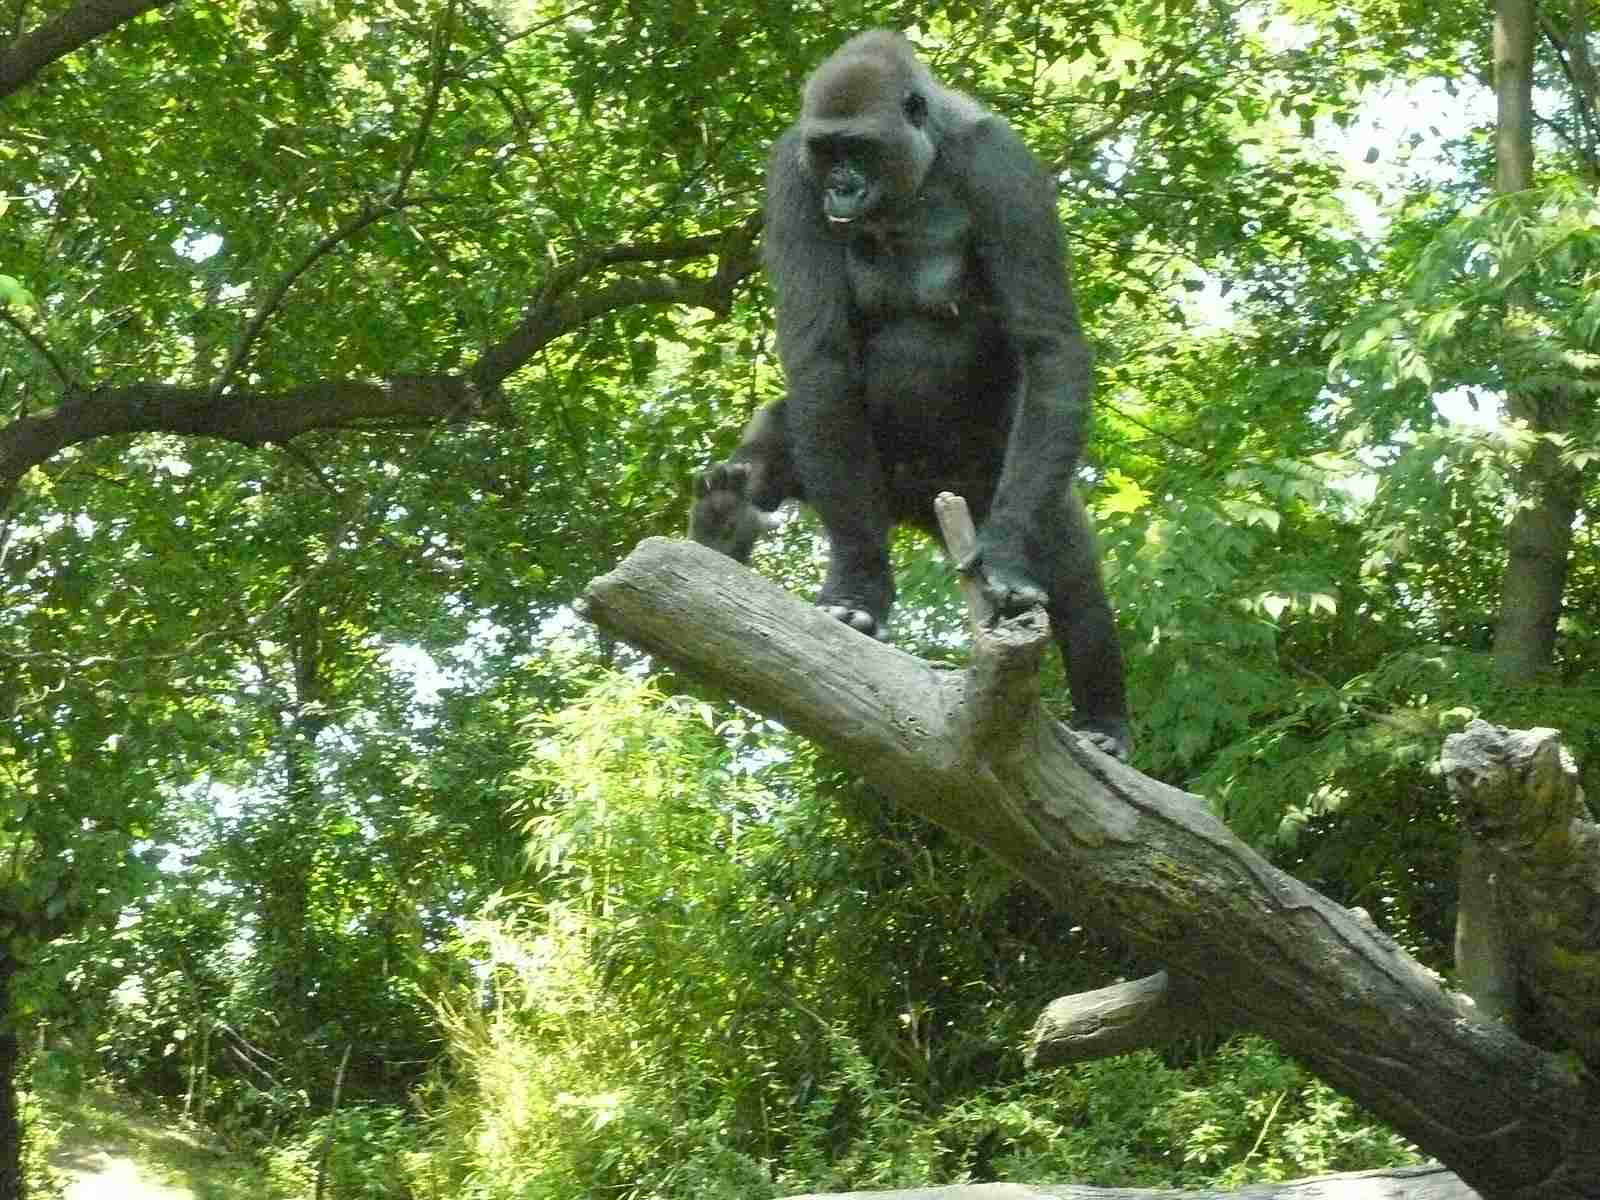 Gorilla Vs human